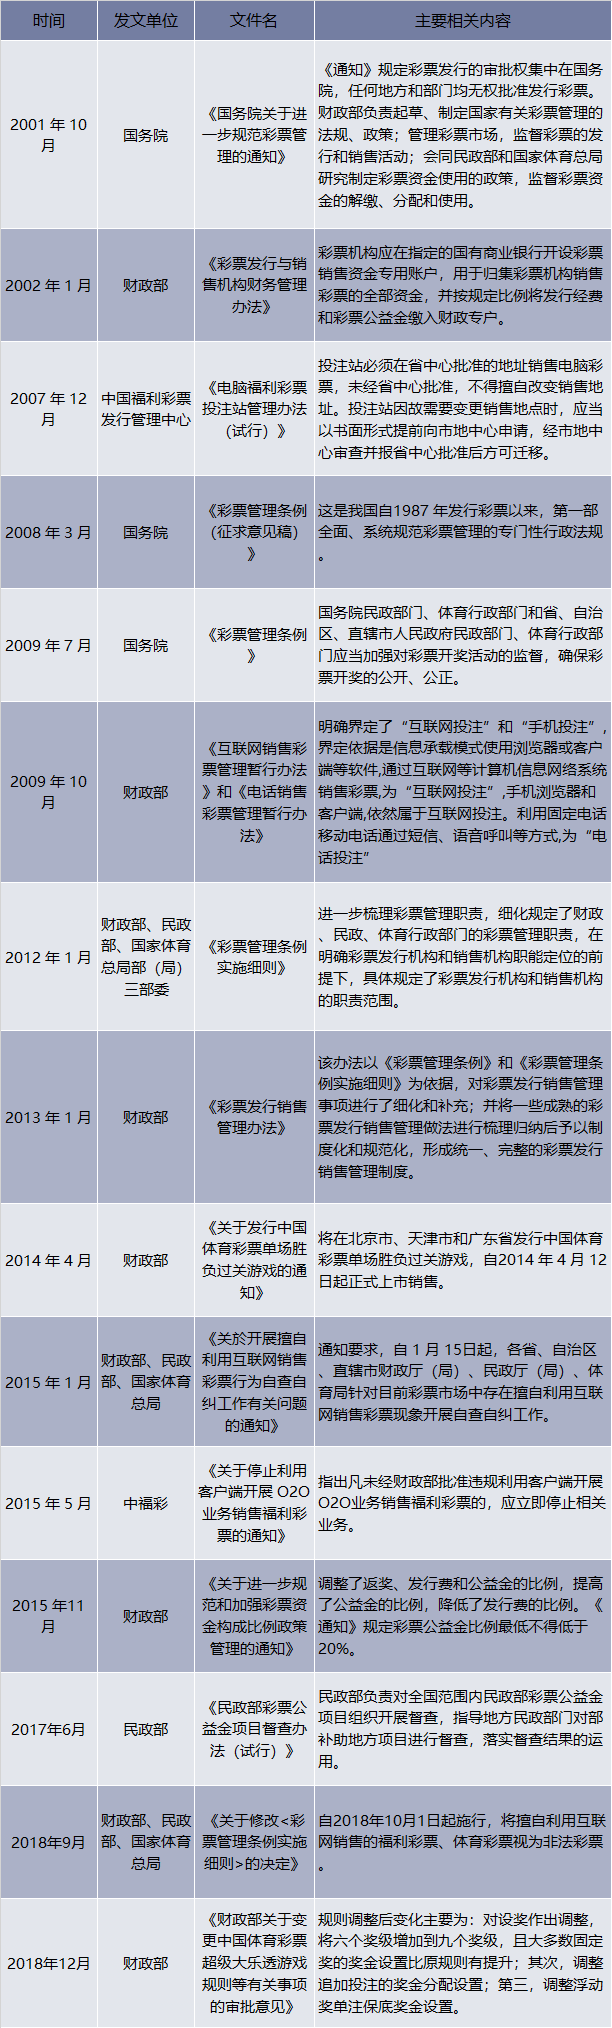 2001-2018年中国彩票行业相关产业政策和法规